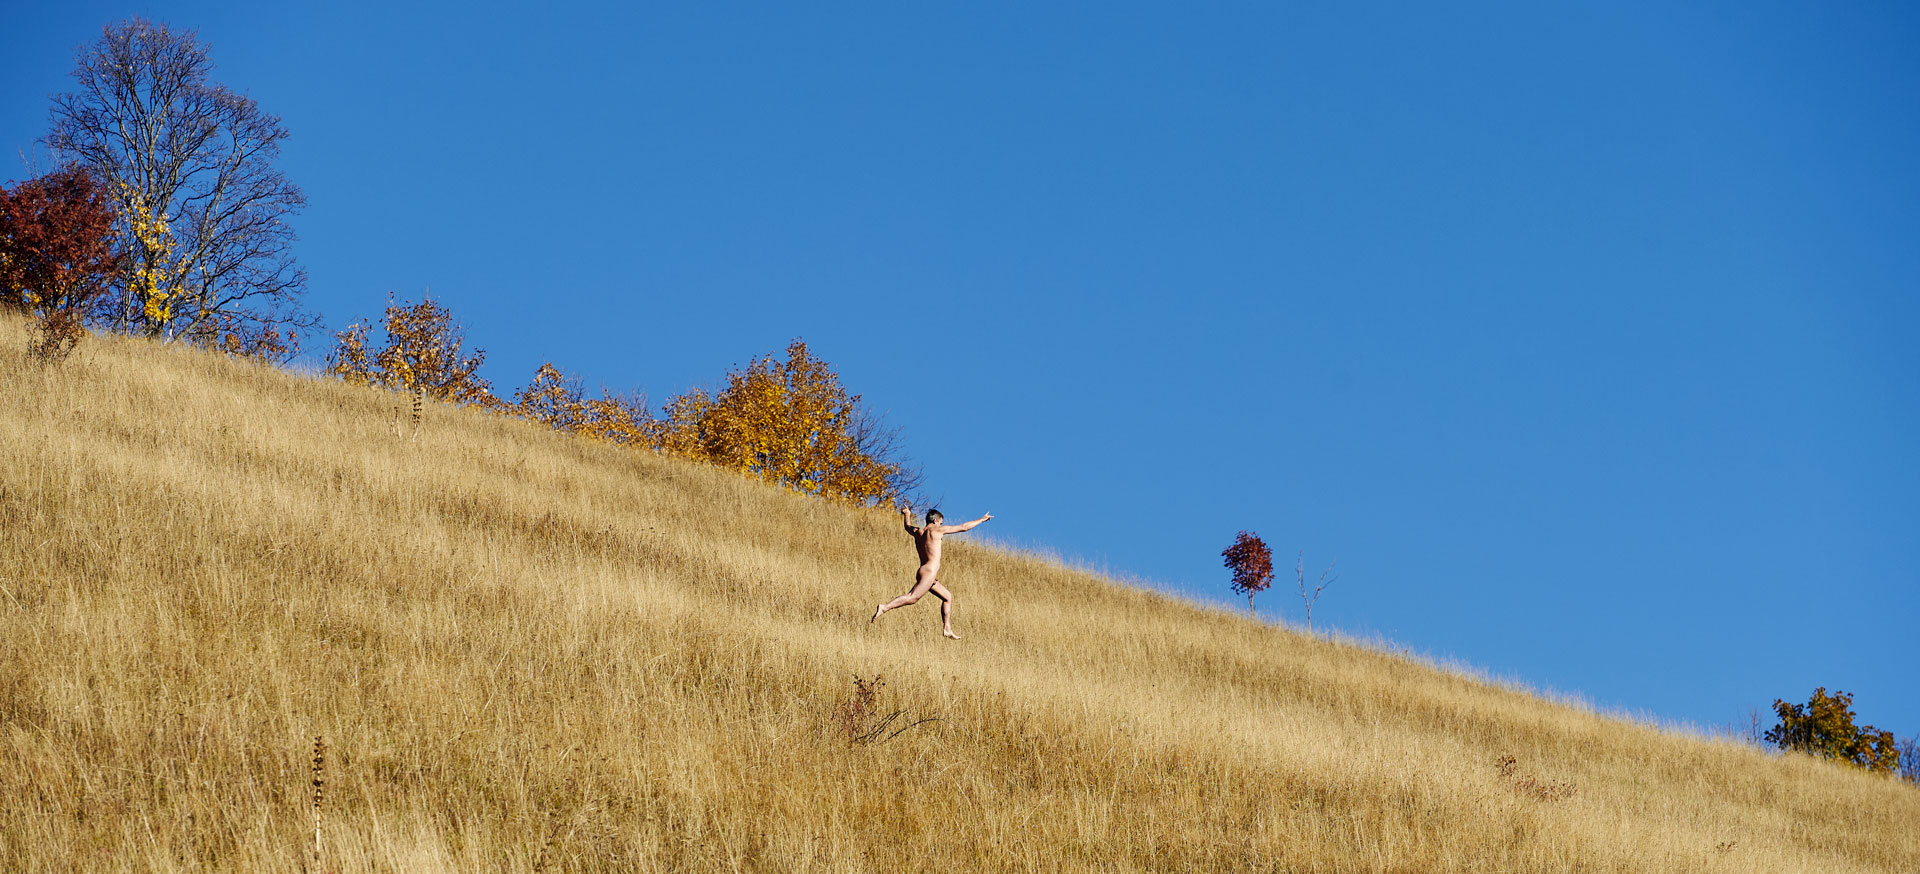 Homme nu courant dans les herbes jaune de l'automne